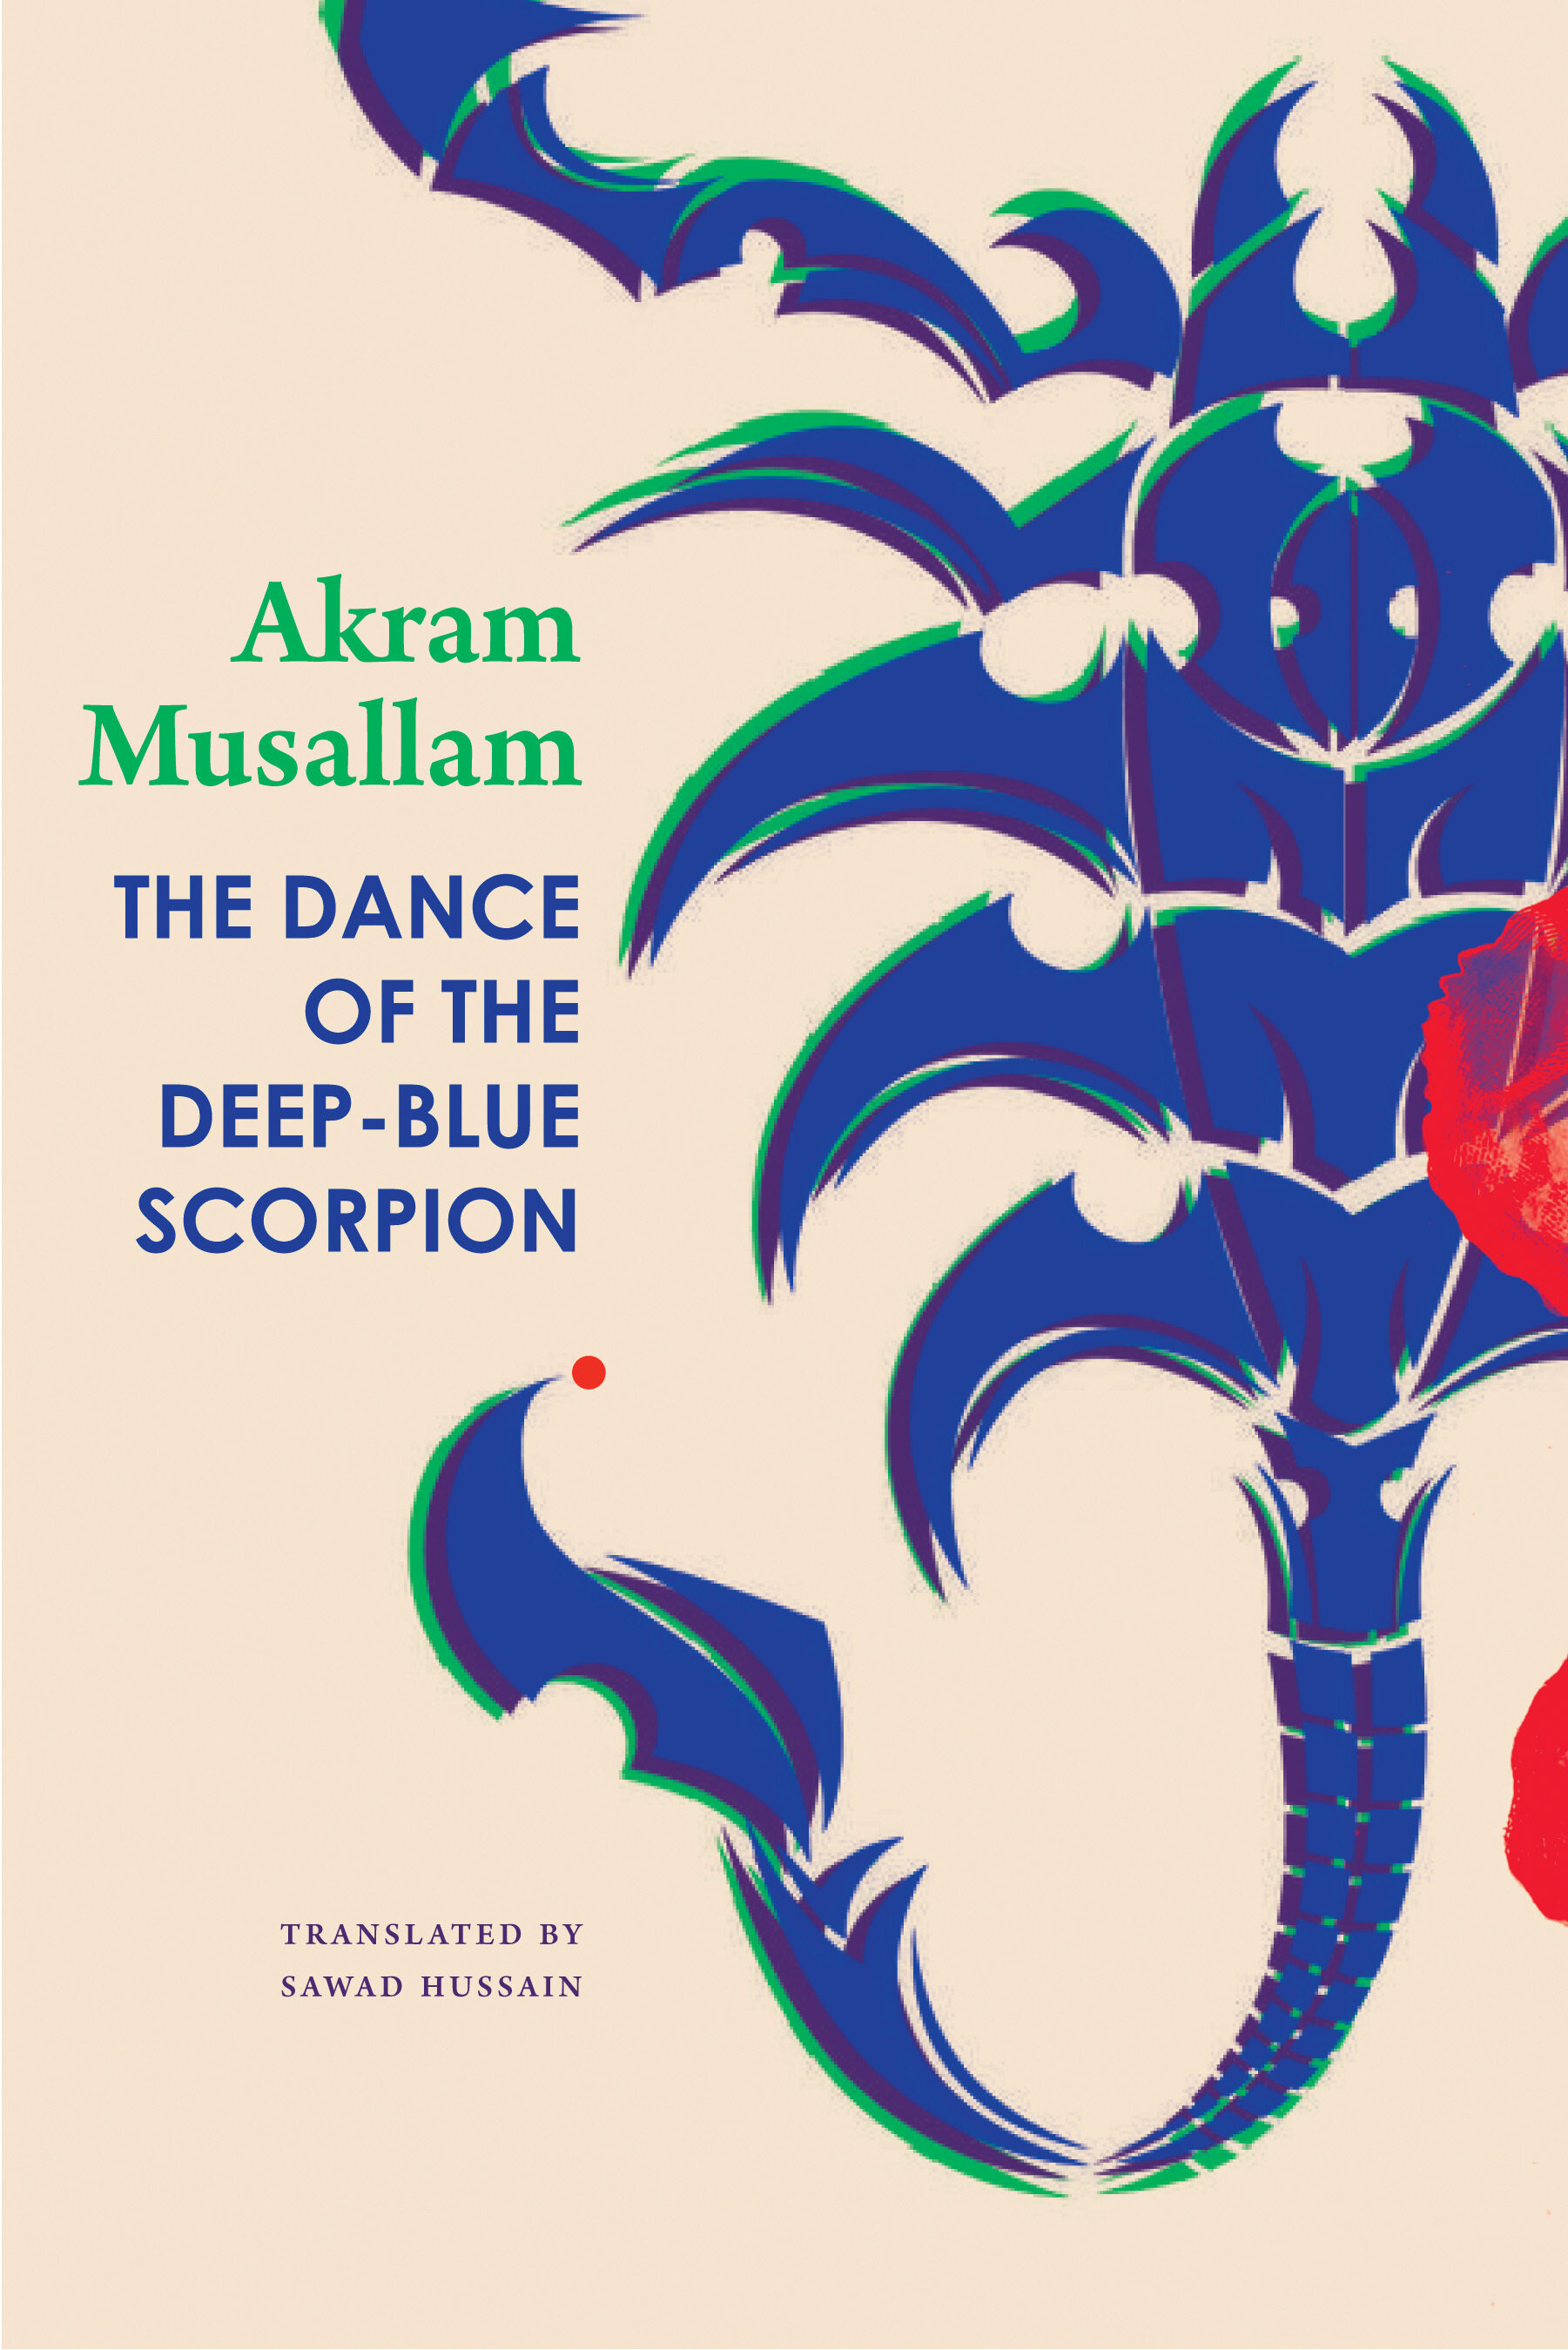 The Dance of the Deep-Blue Scorpion est disponible chez Seagull Books.